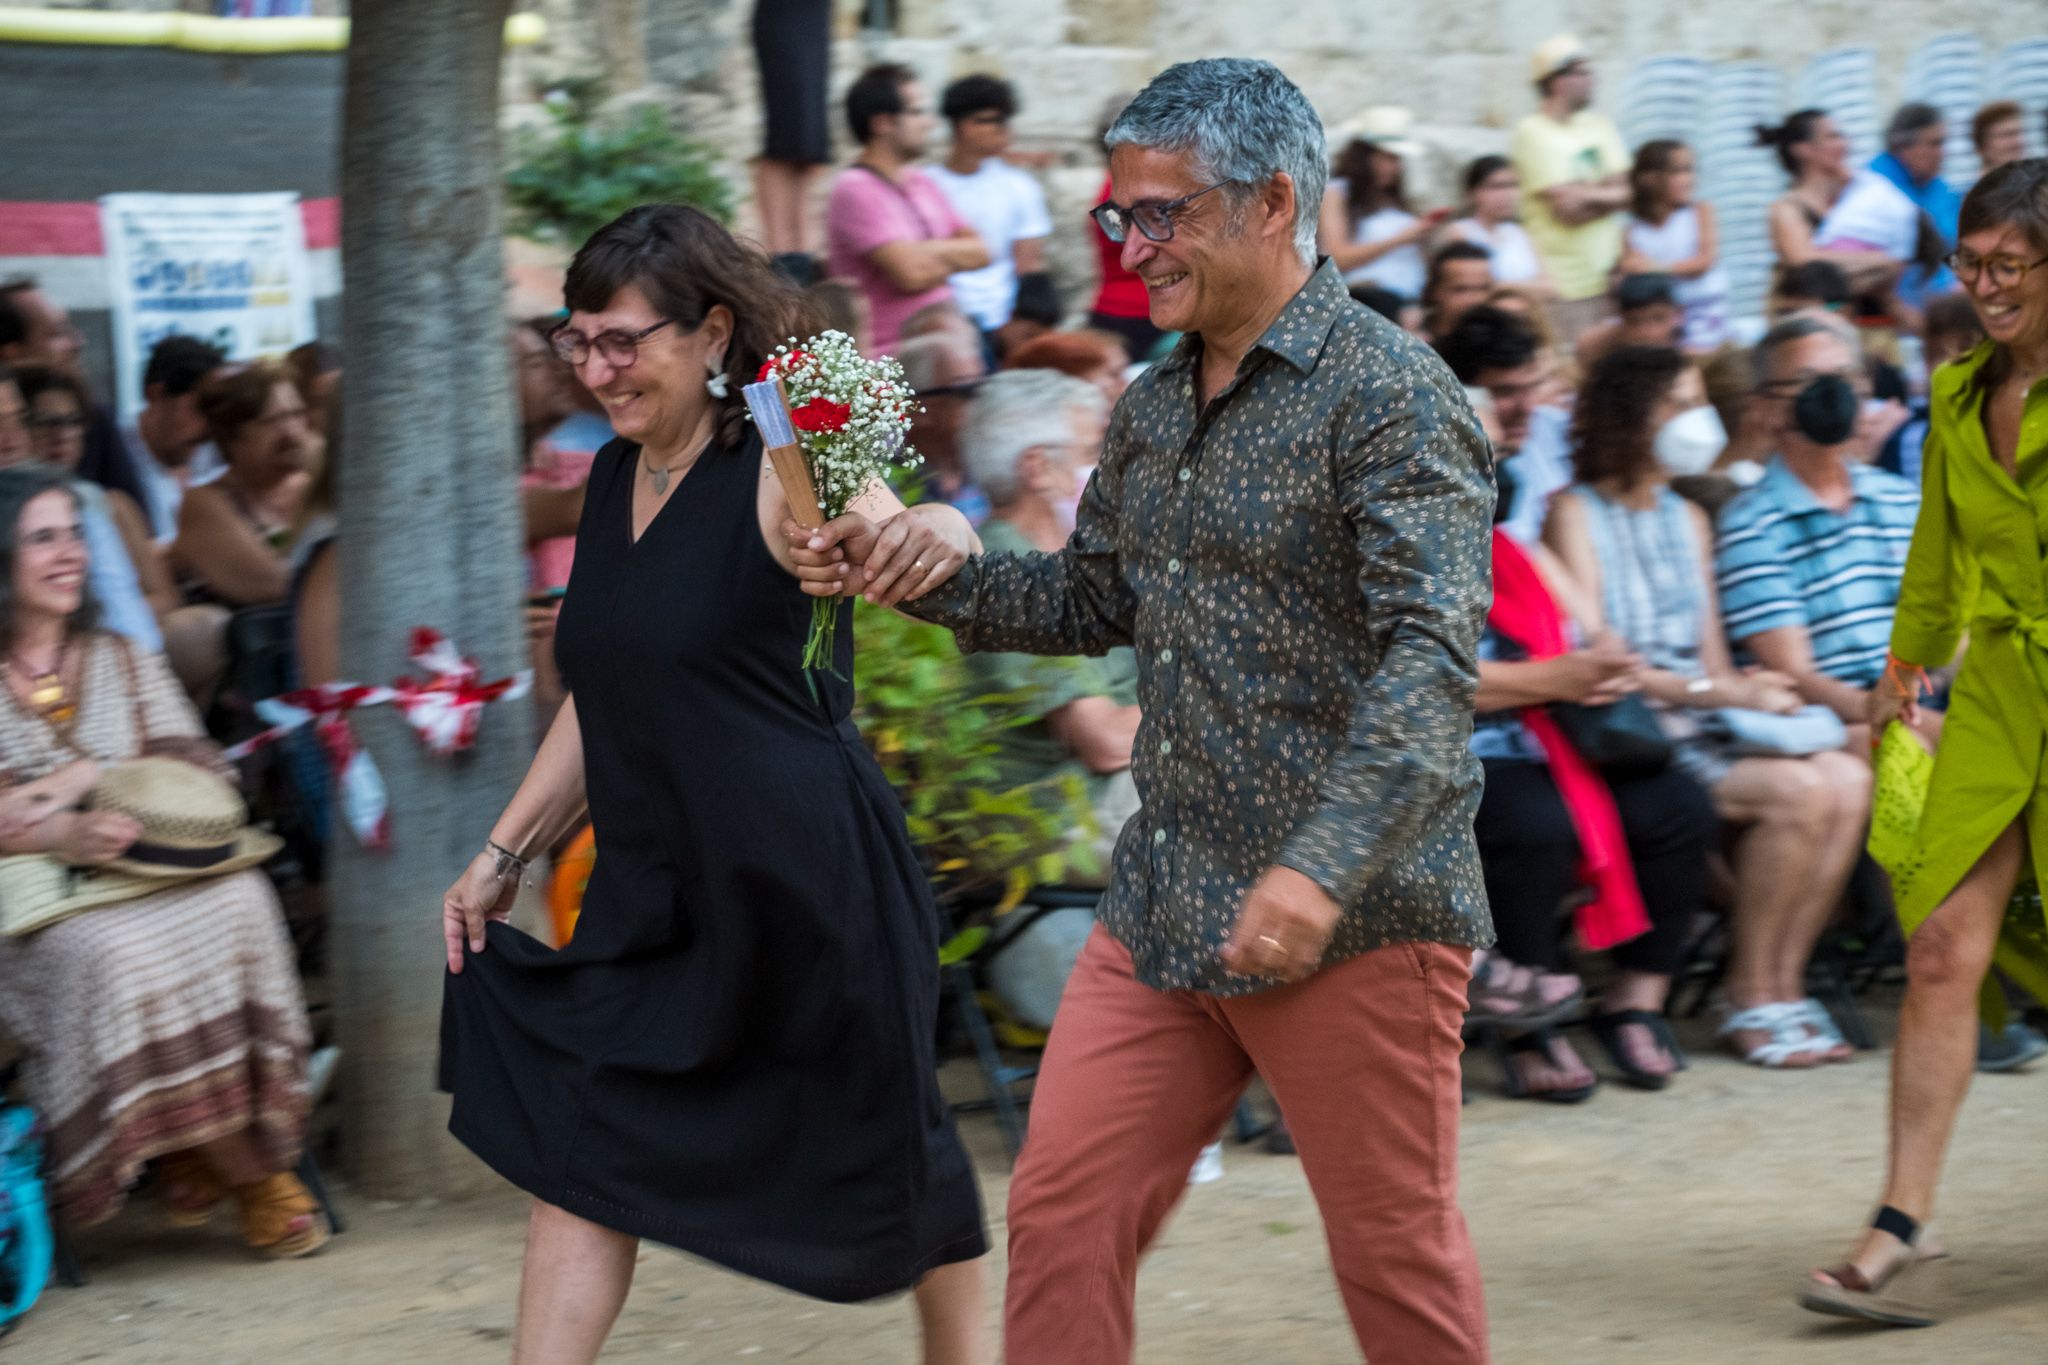 El ball del Paga-li, Joan per la Festa Major de Sant Cugat 2022. FOTO: Ale Gómez